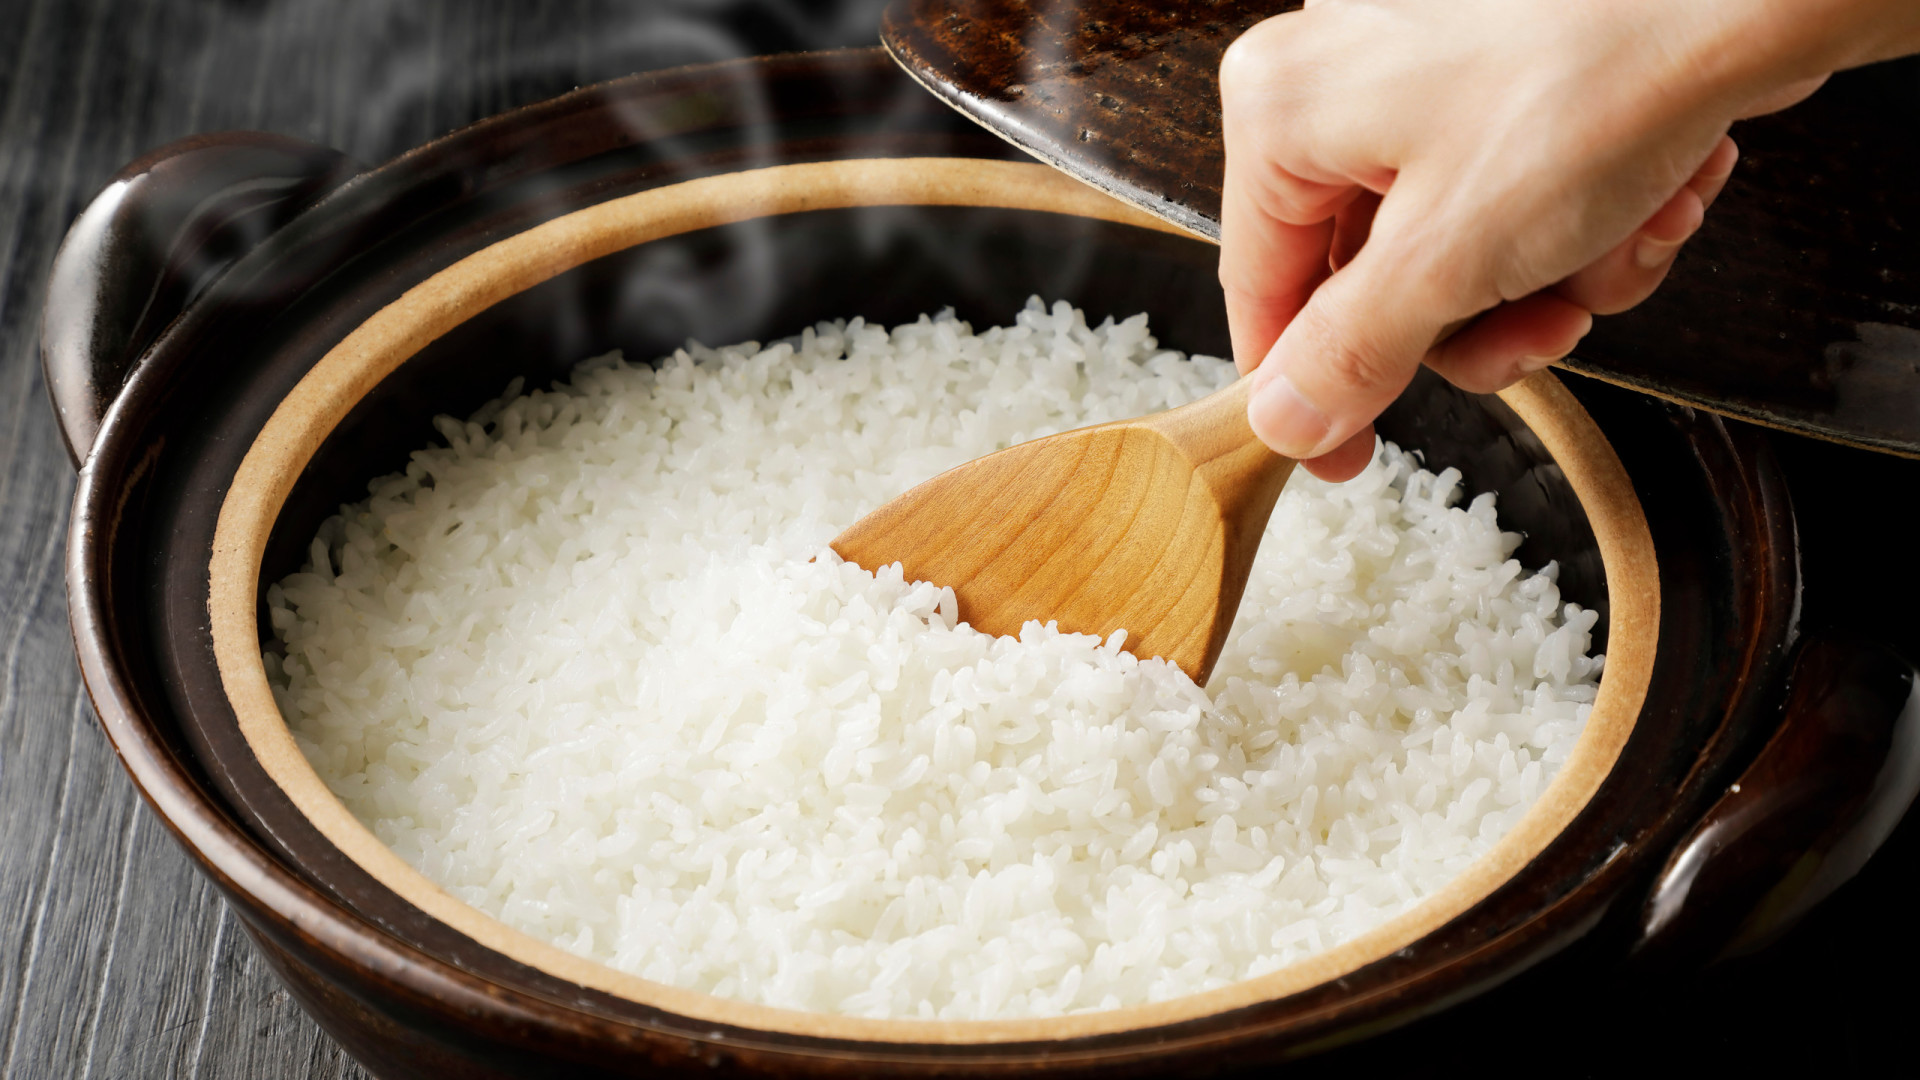 O melhor é não reaquecer as sobras de arroz. Conheça a razão